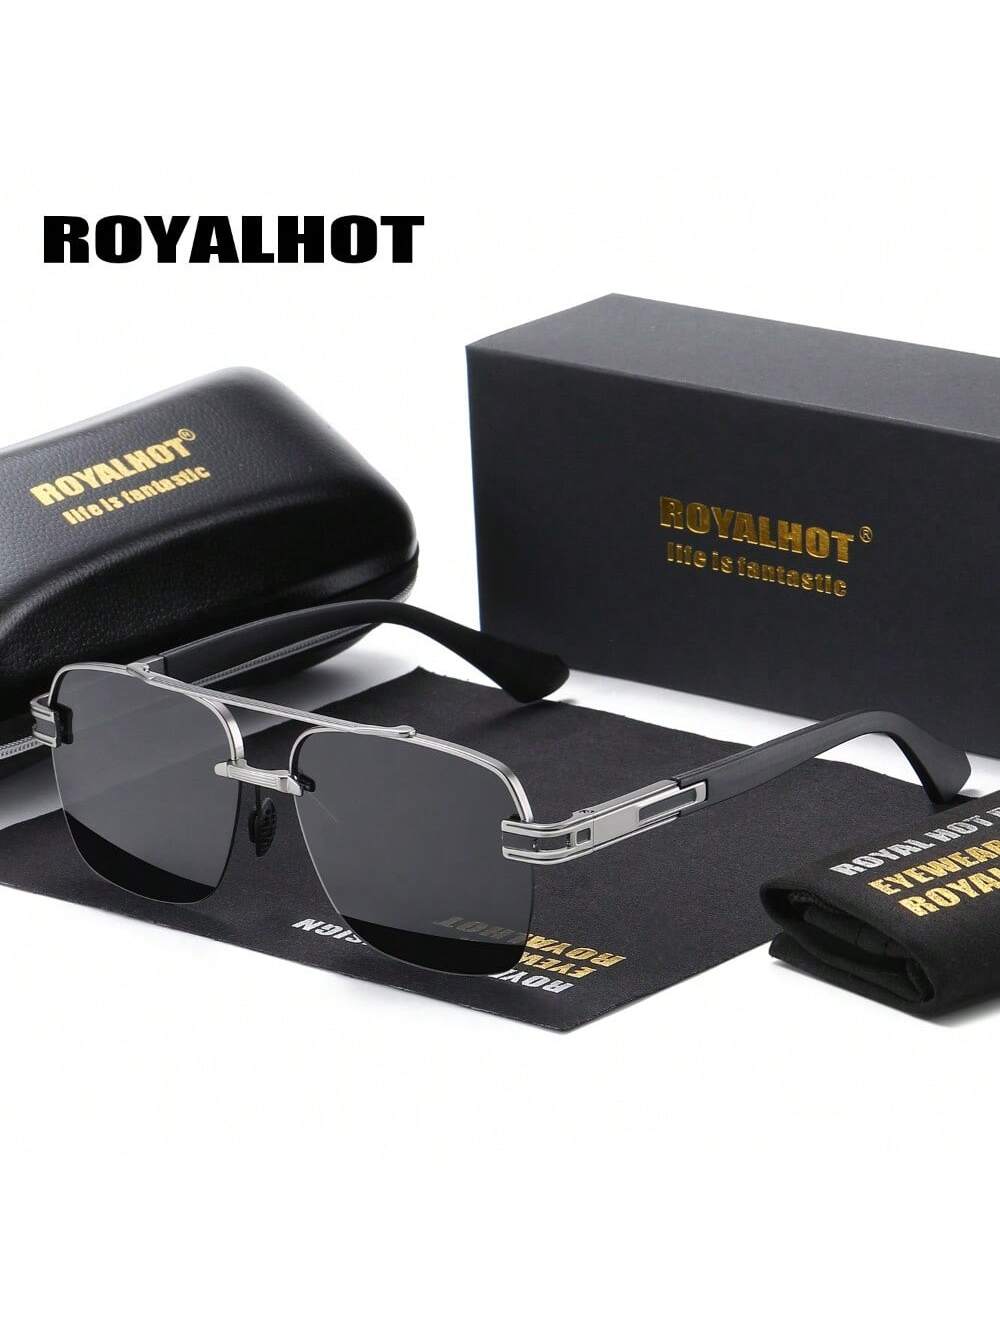 Royalhot Унисекс Классические поляризованные солнцезащитные очки в металлической эллиптической оправе